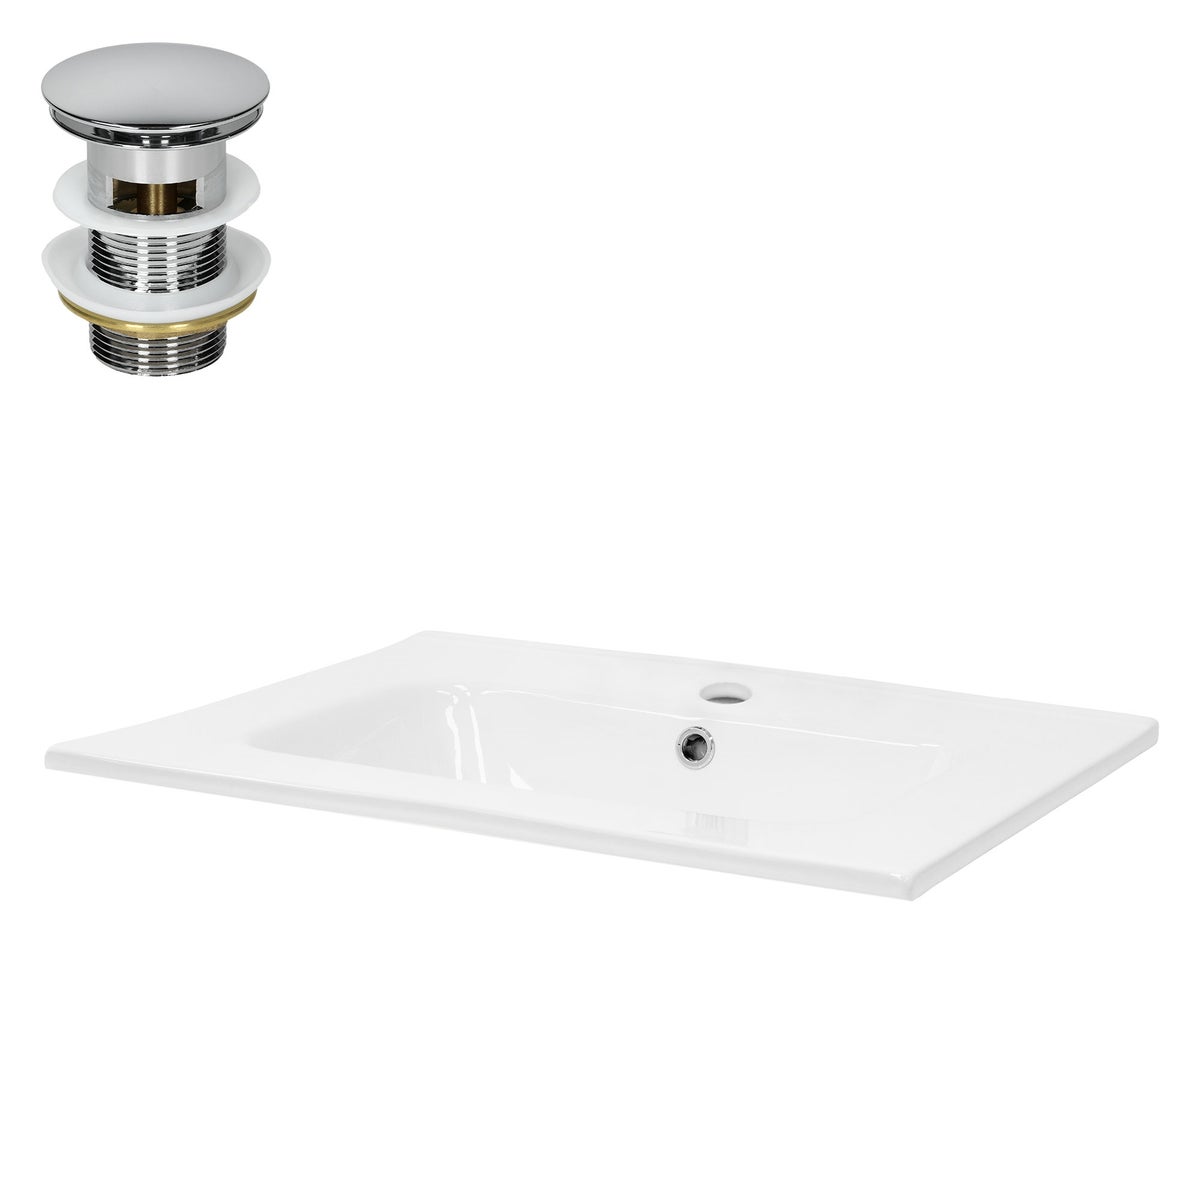 ML-Design Waschbecken Keramik Weiß 61x16,5x46 cm inkl. Ablaufgarnitur mit Überlauf Einbauwaschbecken Aufsatzwaschbecken Einbauwaschtisch Waschschale Waschplatz Handwaschbecken für Badezimmer/Gäste-WC